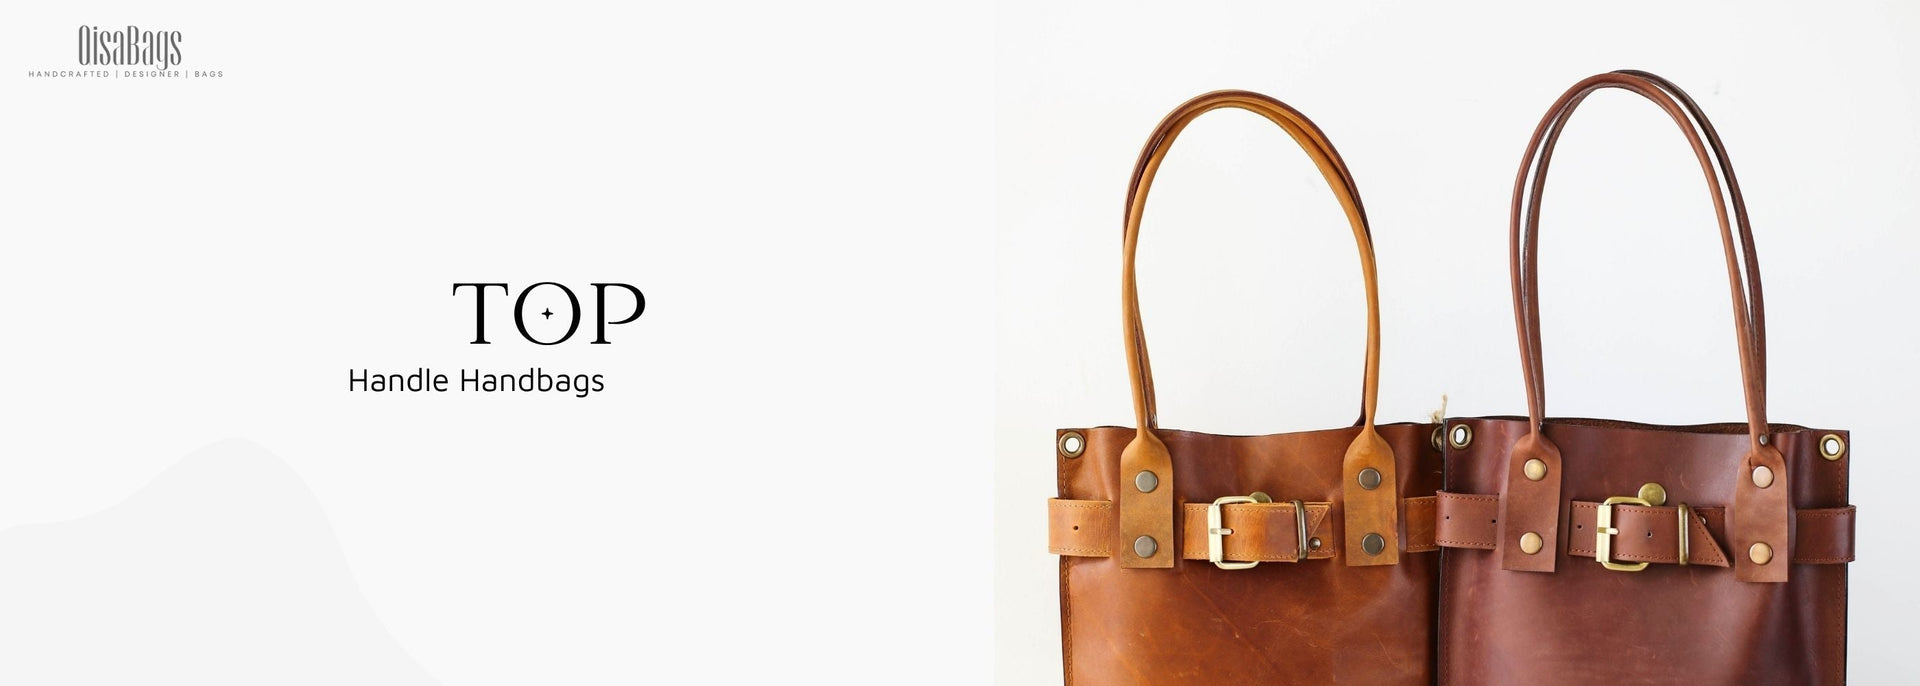 Designer Brown Crossbody Bags